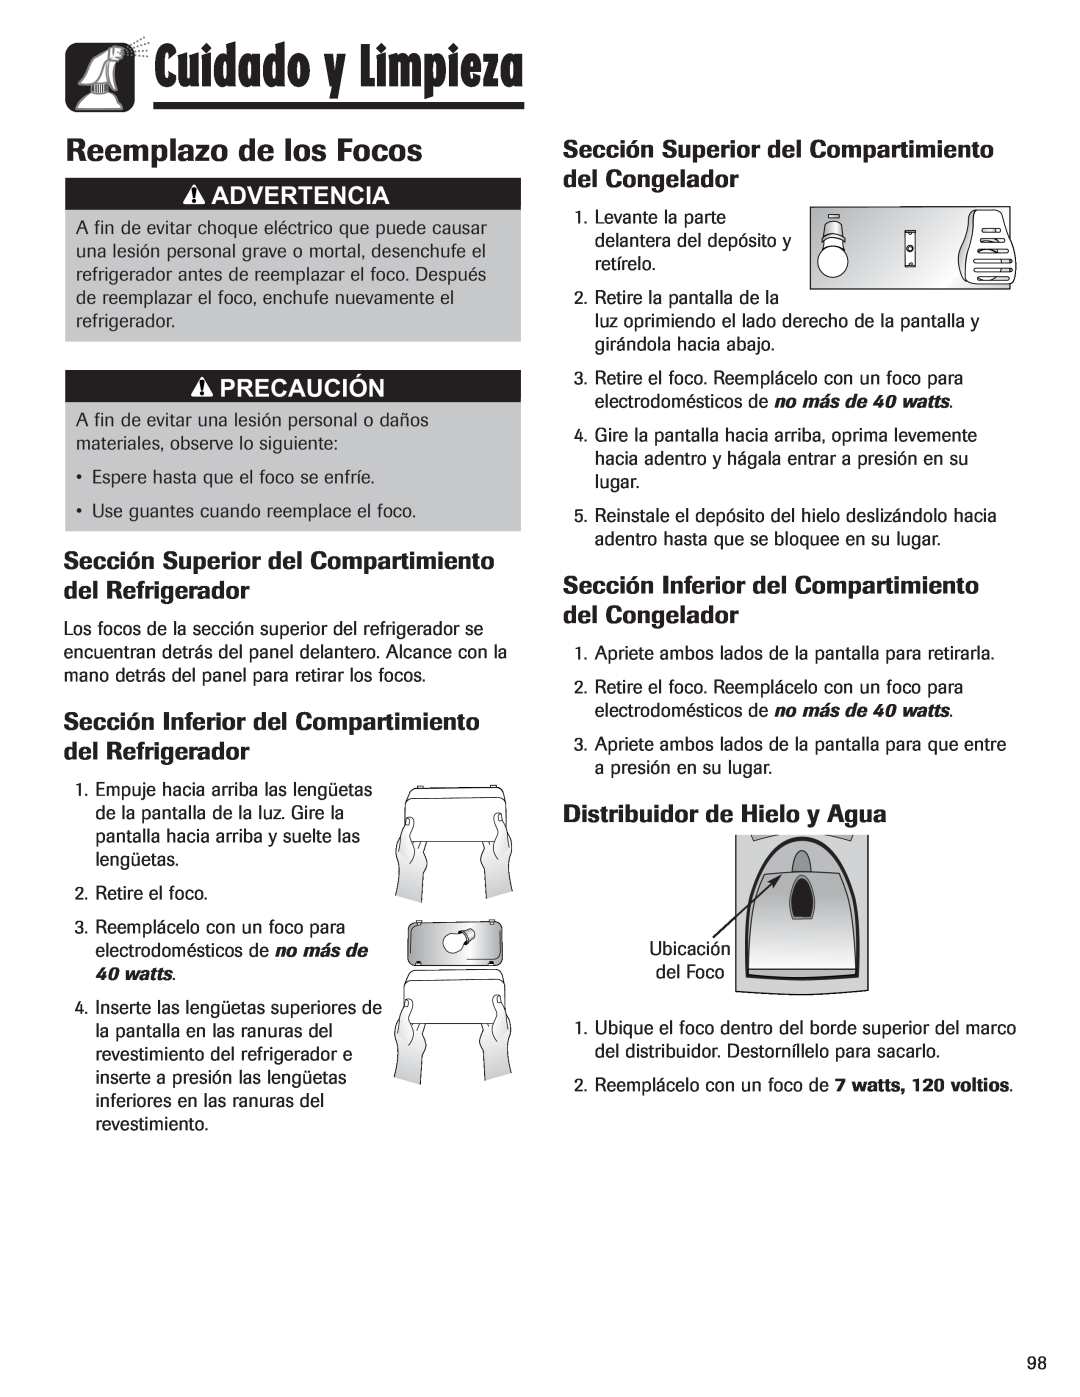 Amana ASD2328HEW Reemplazo de los Focos, Sección Superior del Compartimiento del Refrigerador, Cuidado y Limpieza 